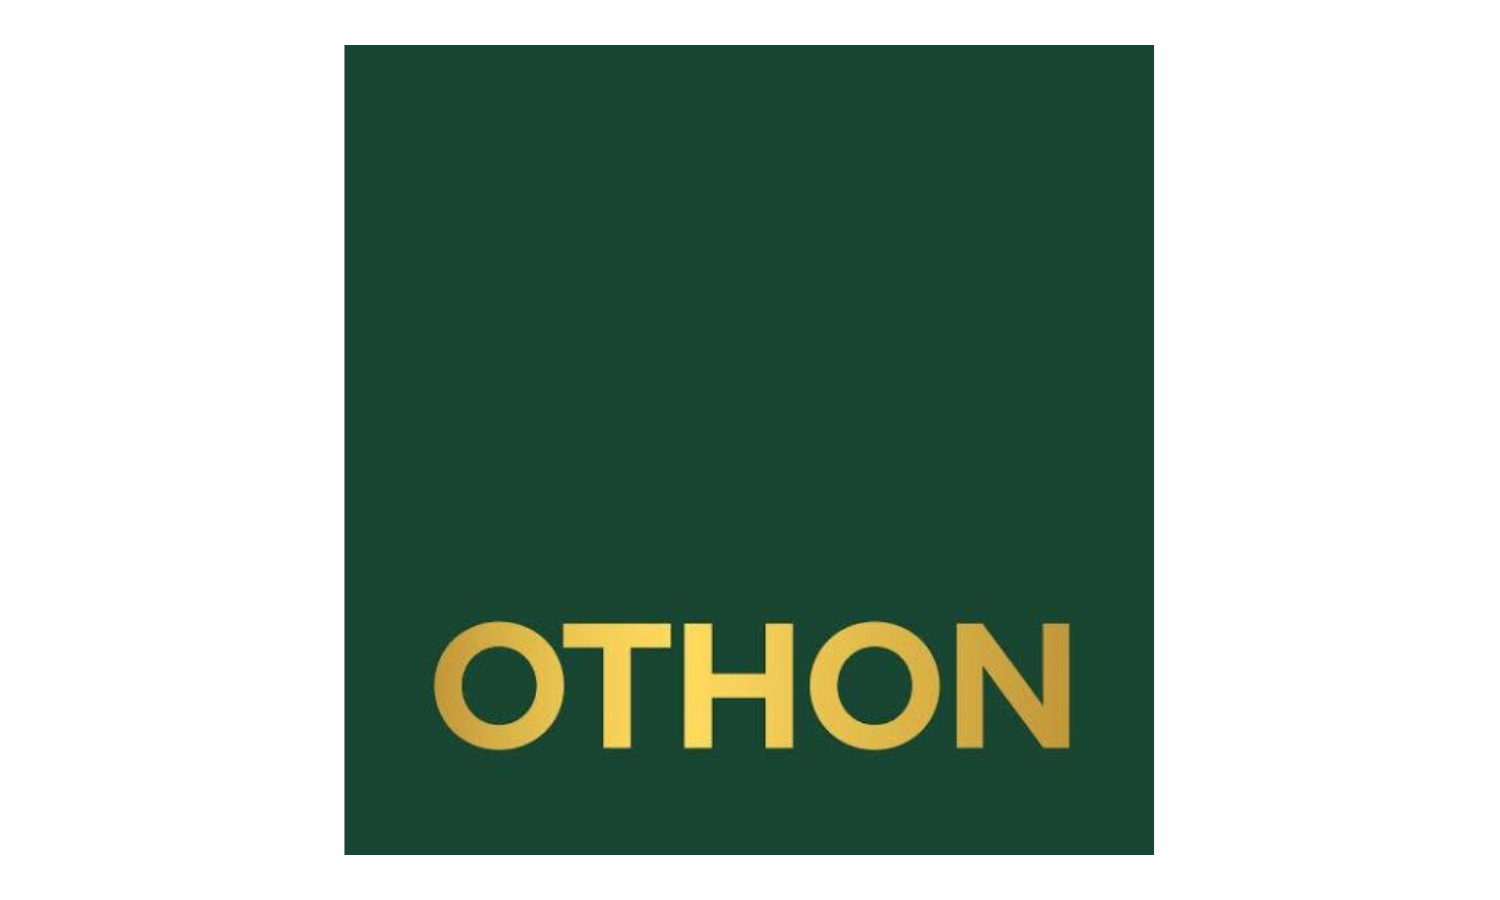 OTHON